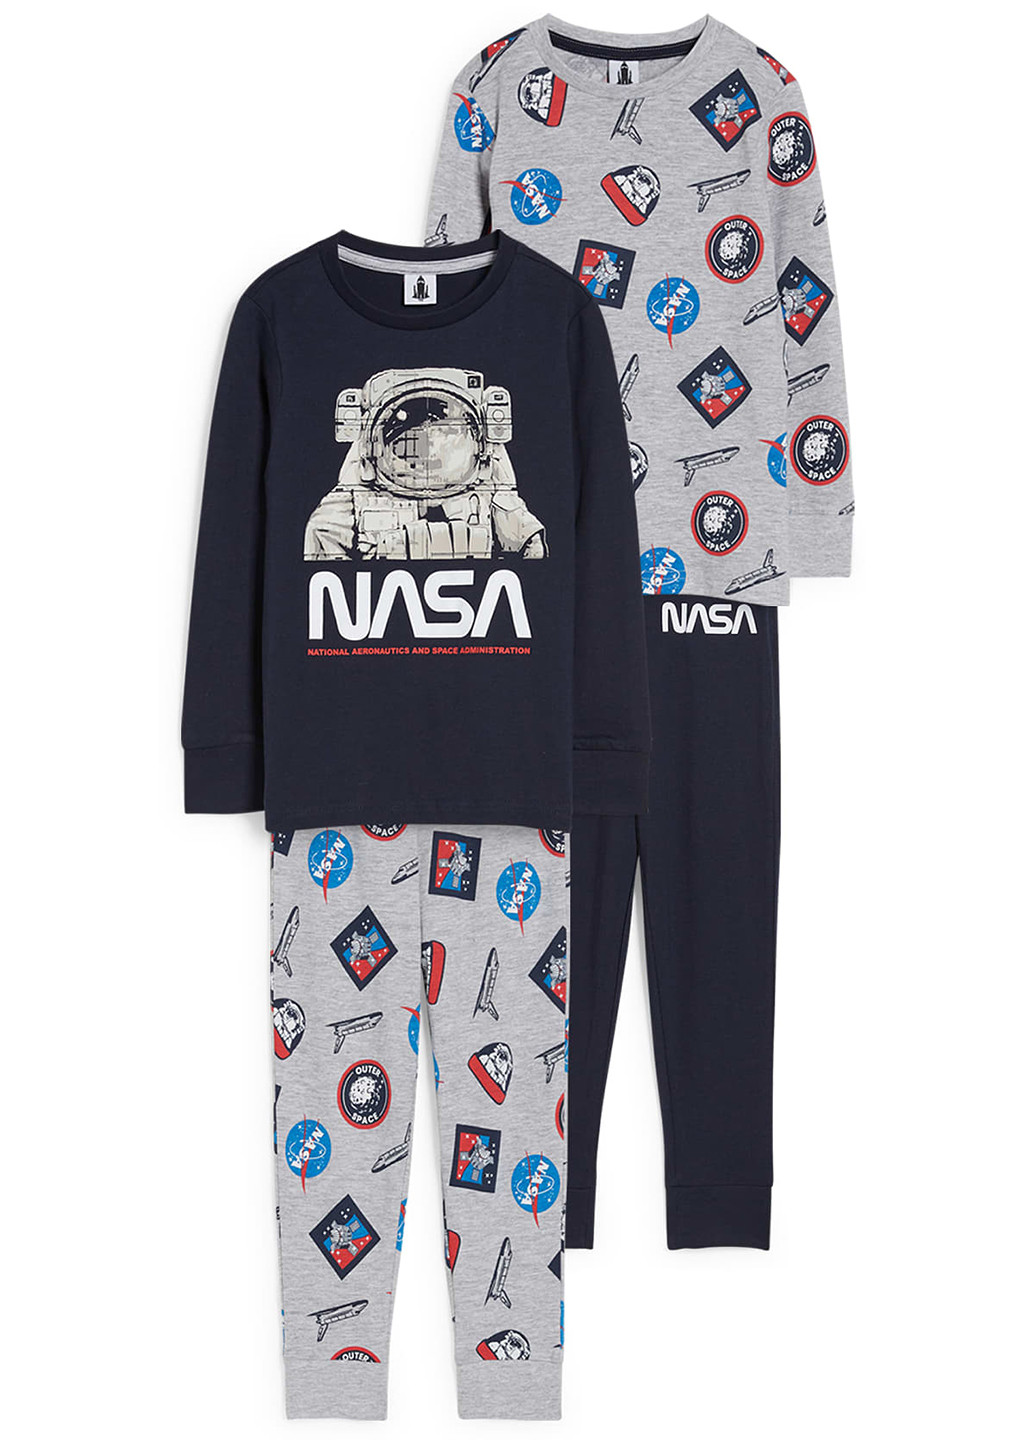 Комбинированная всесезон пижама (лонгслив, брюки), 2 шт. лонгслив + брюки C&A